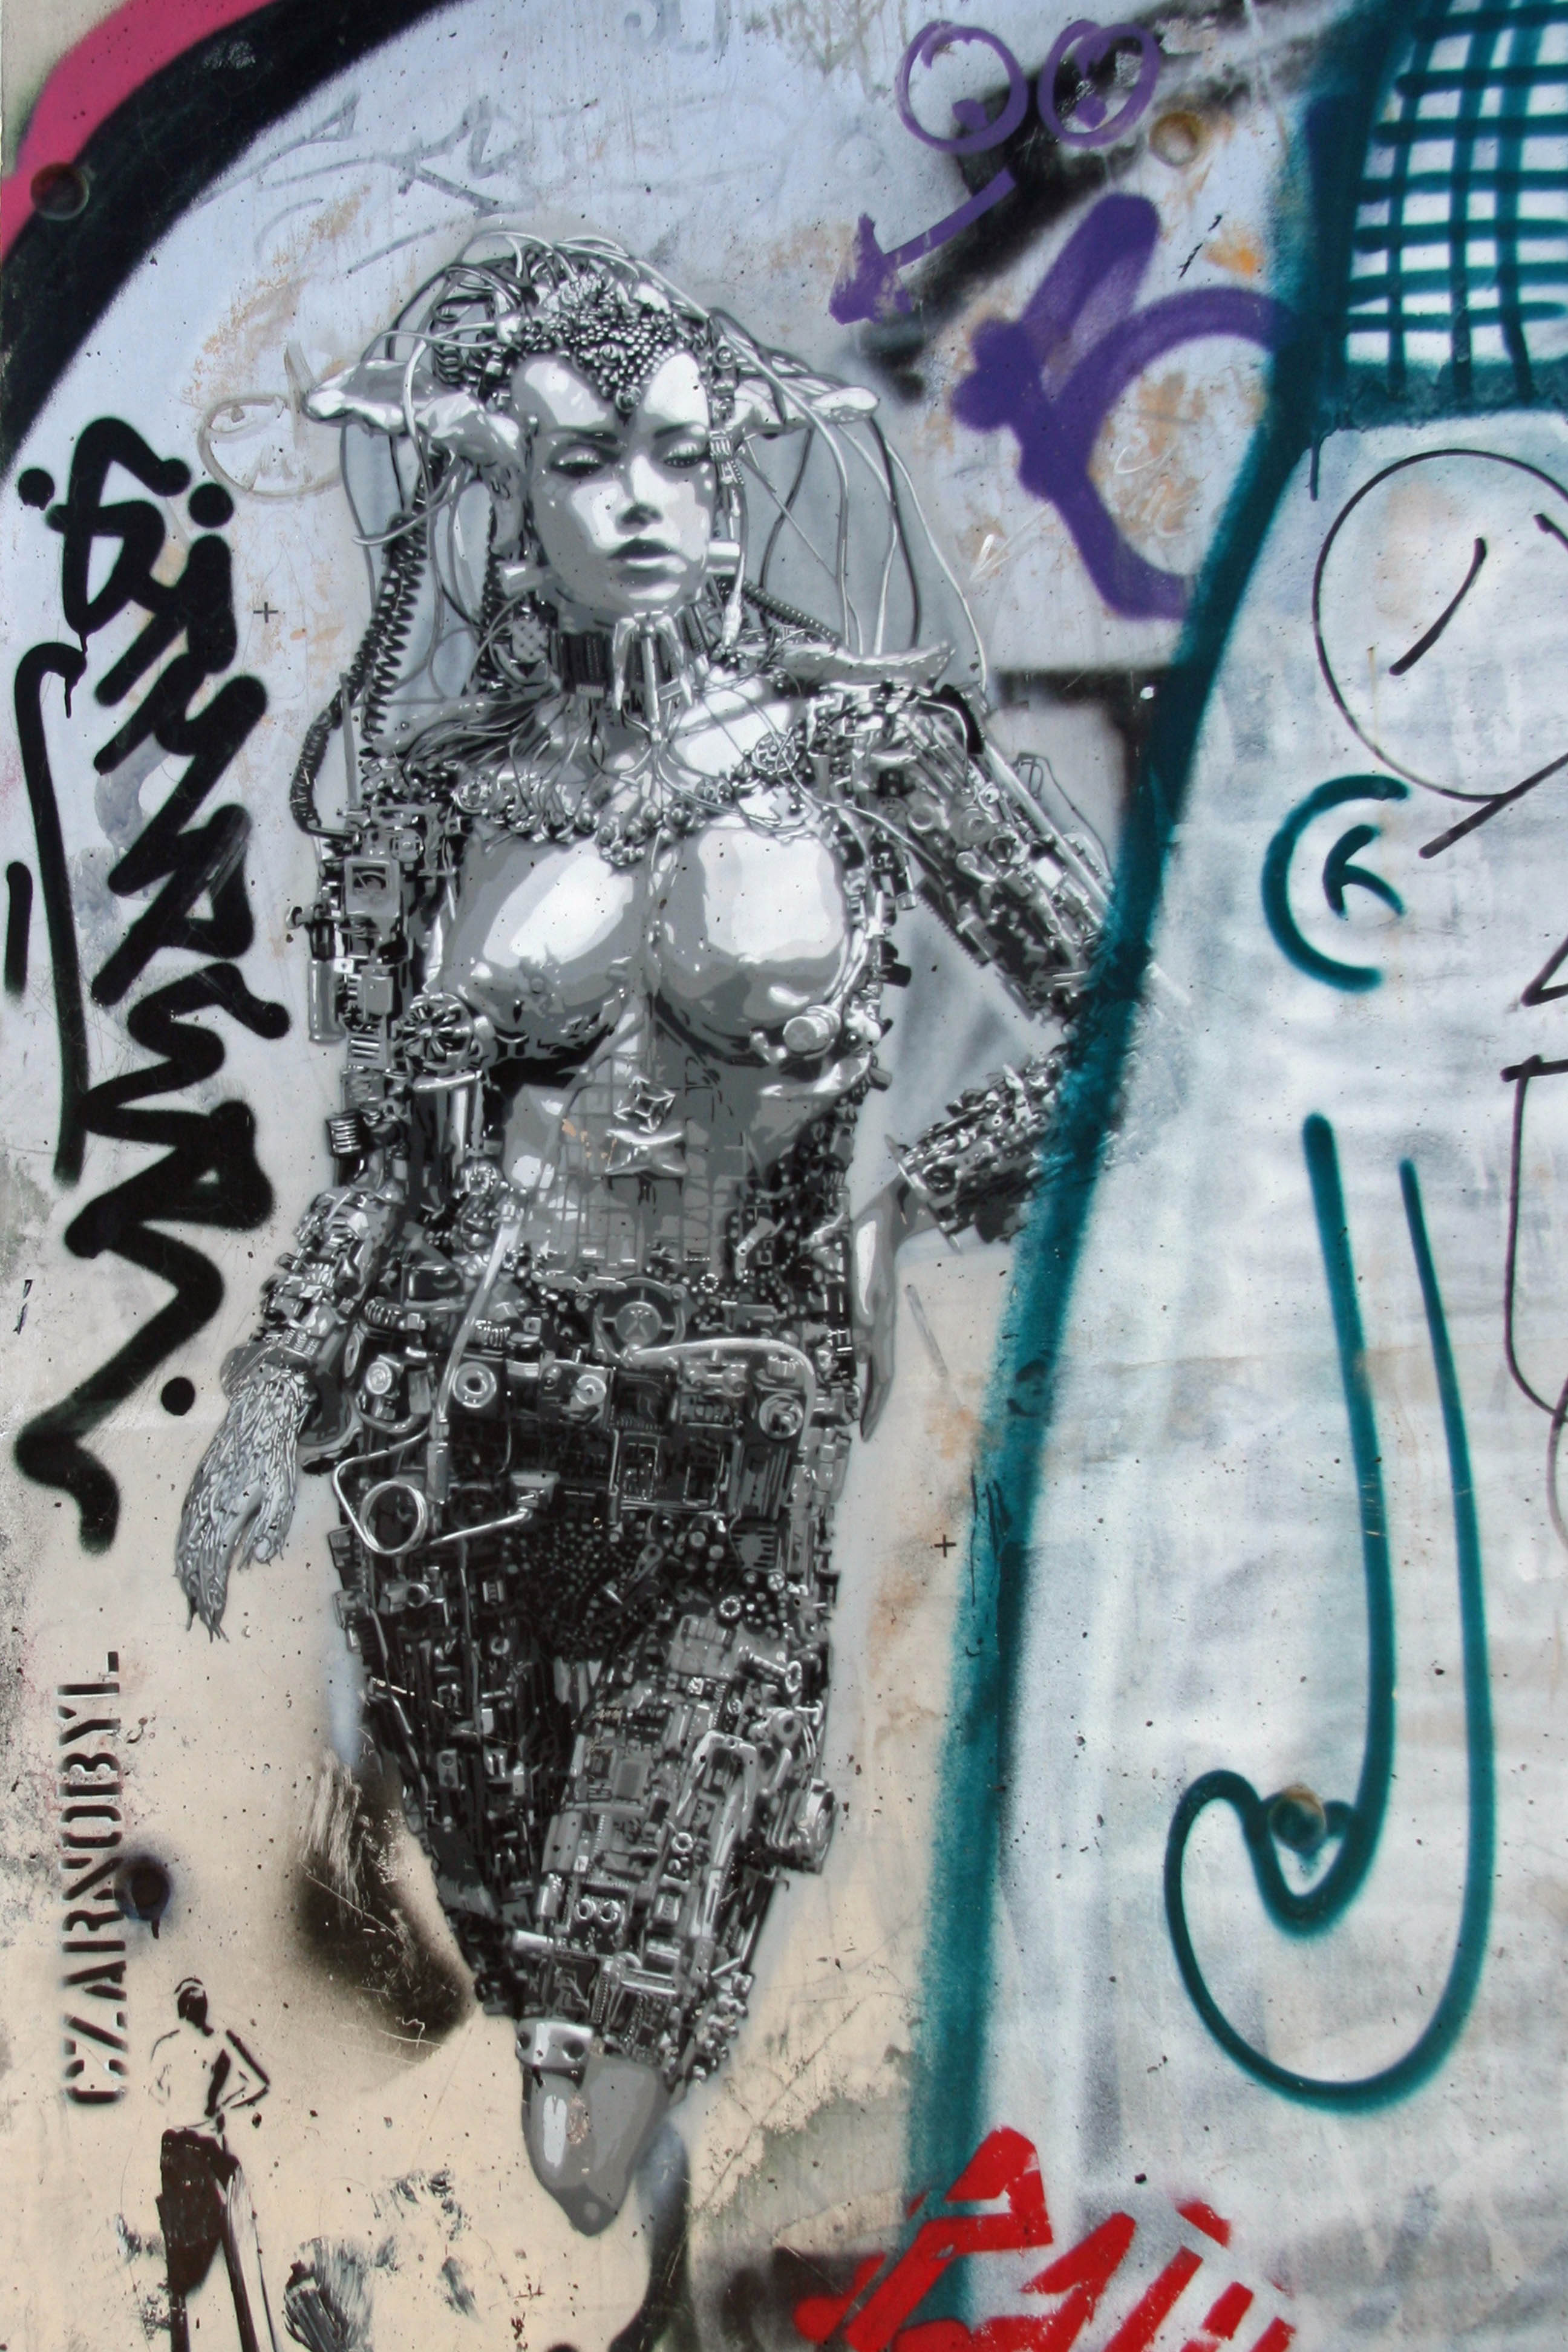 Mutation - Street Art by CZARNOBYL in Berlin